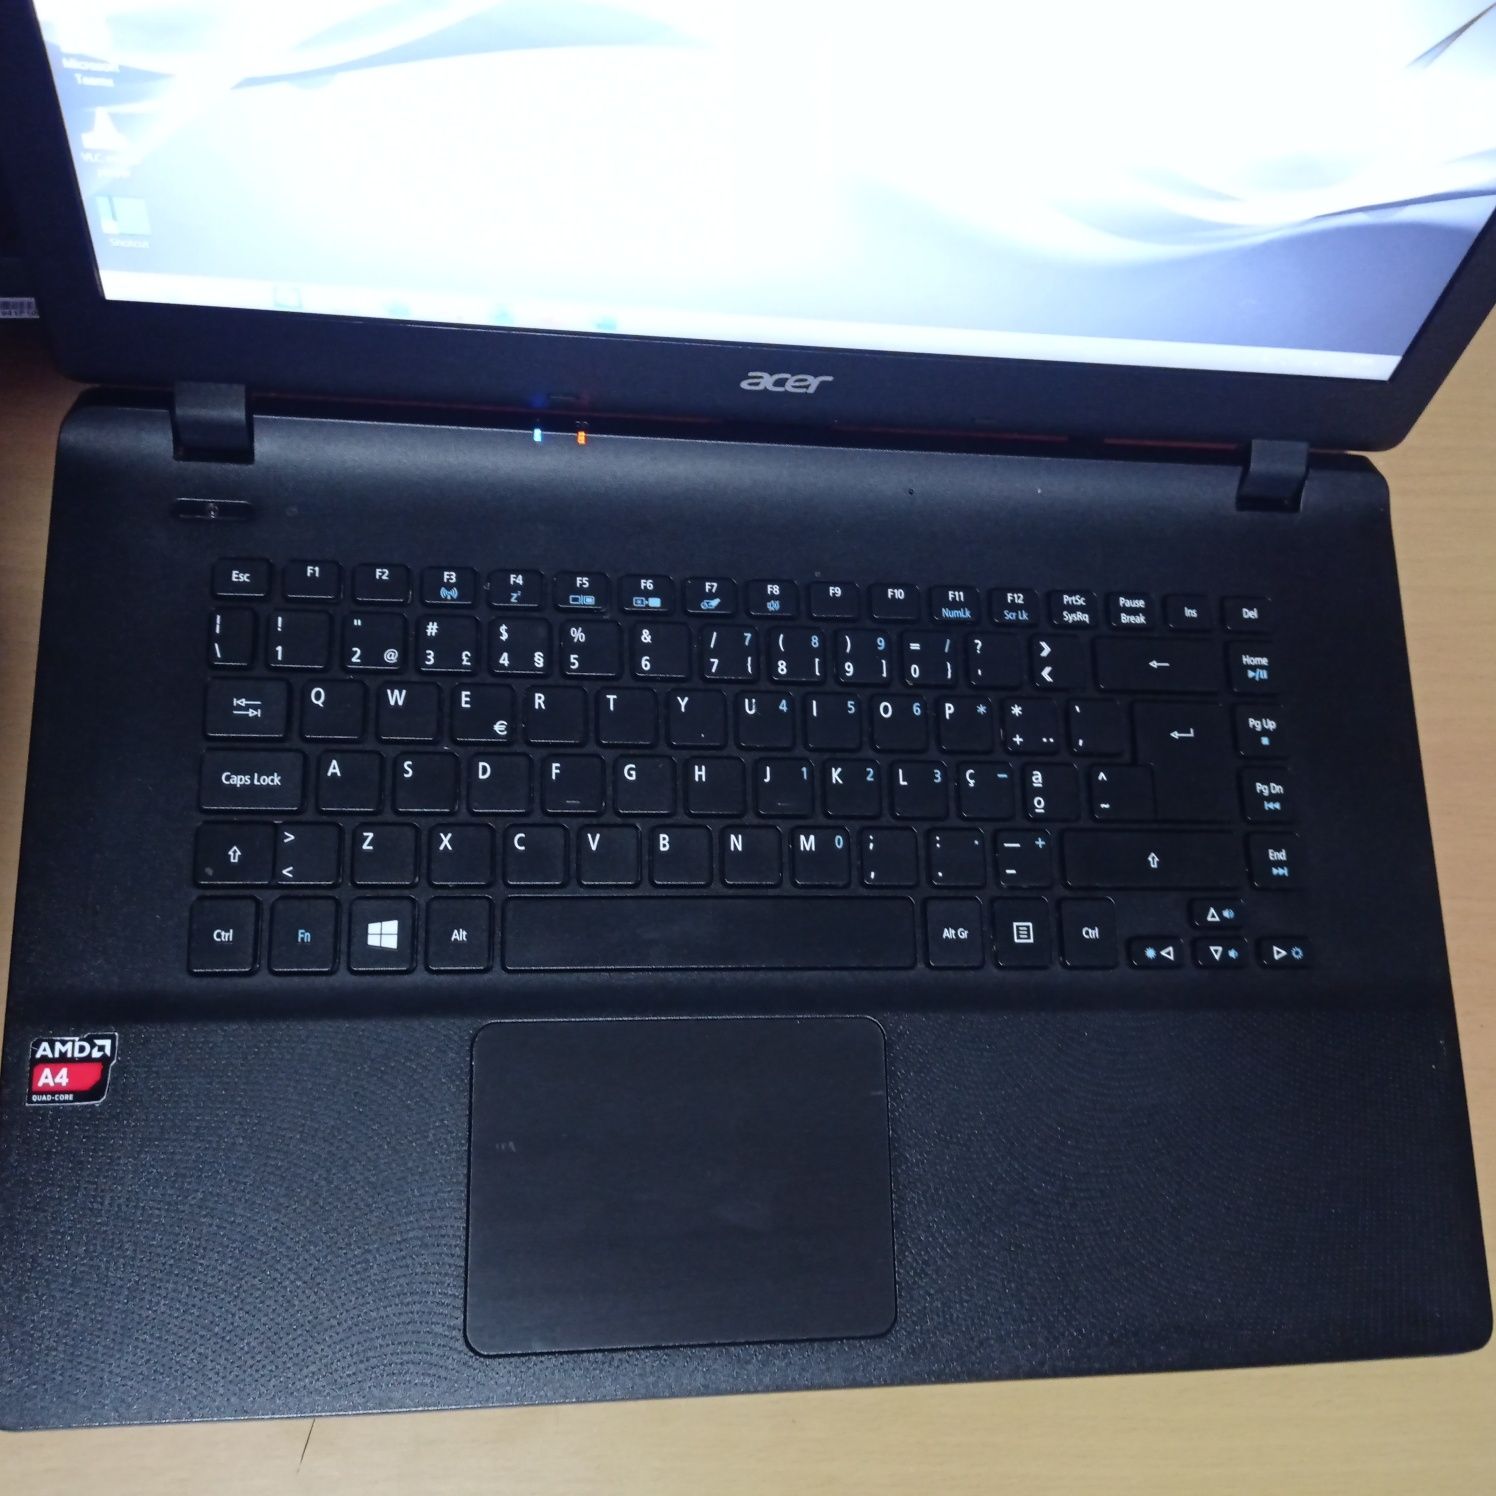 Acer Aspire ES1-520